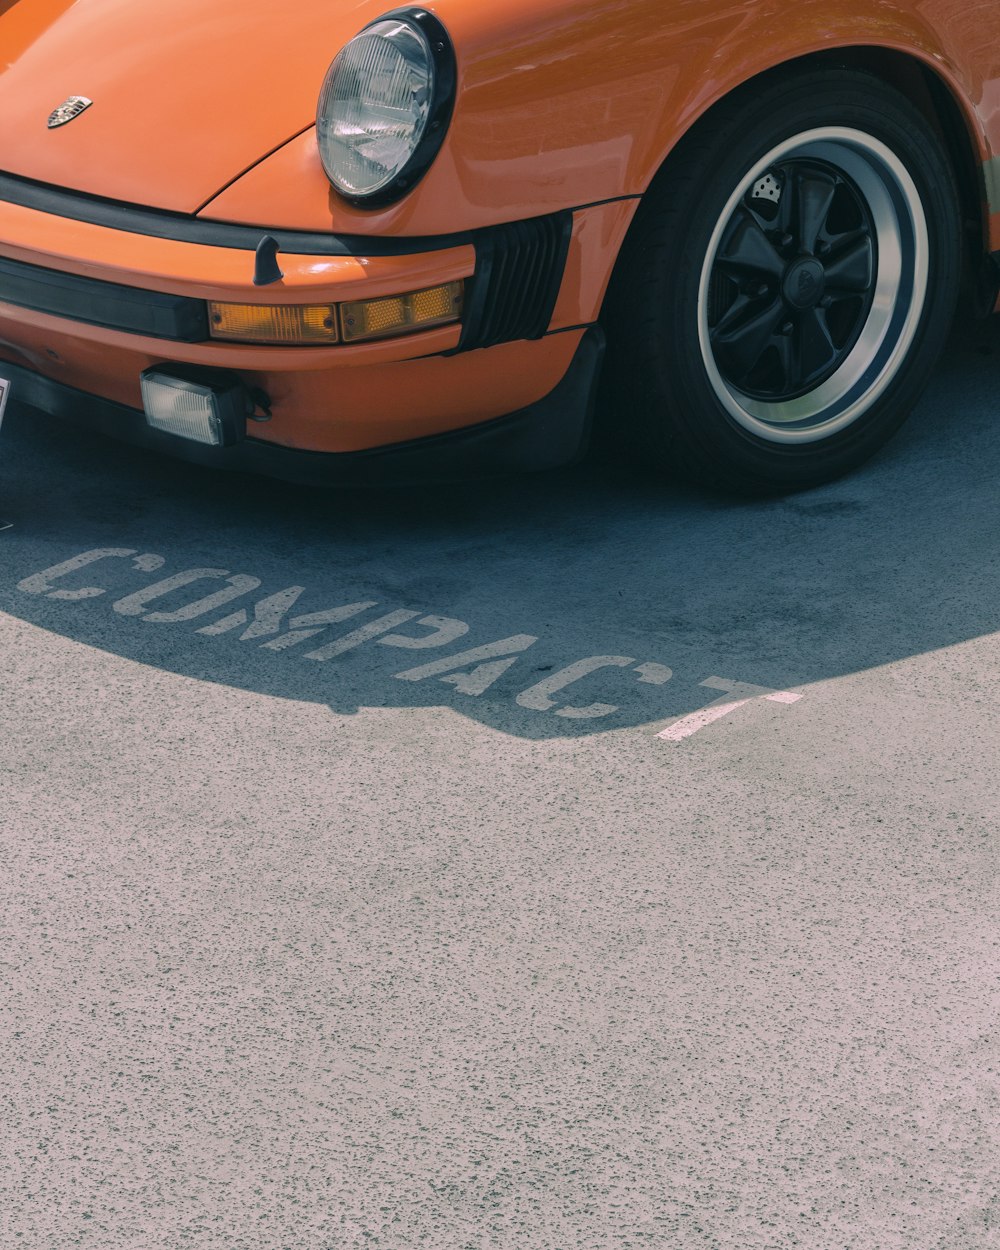 Vehículo Porsche naranja en el estacionamiento compacto